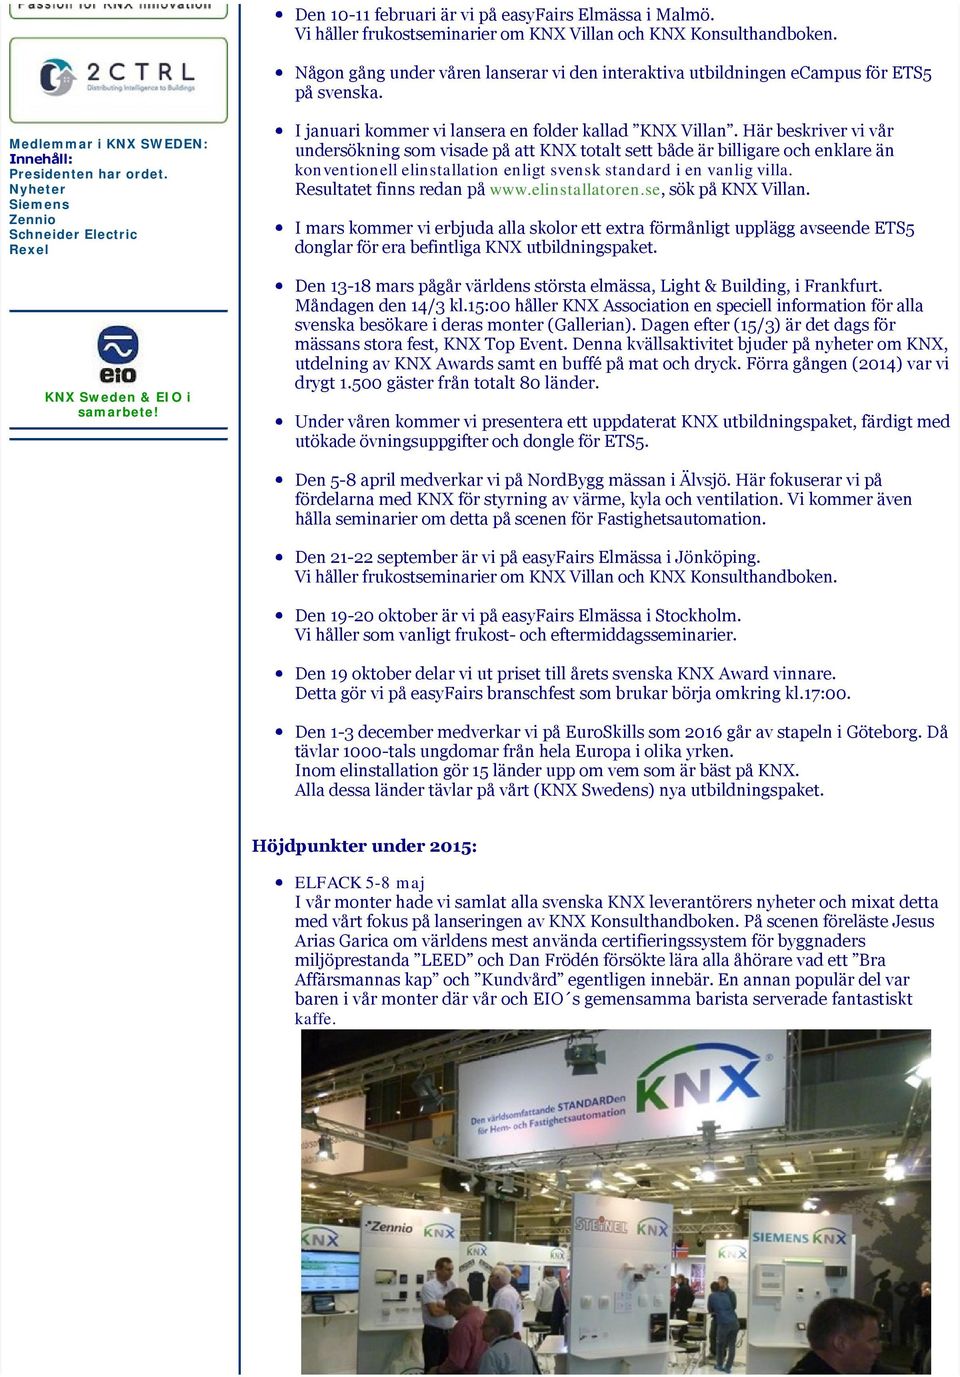 Nyheter Siemens Zennio Schneider Electric Rexel KNX Sweden & EIO i samarbete! I januari kommer vi lansera en folder kallad KNX Villan.